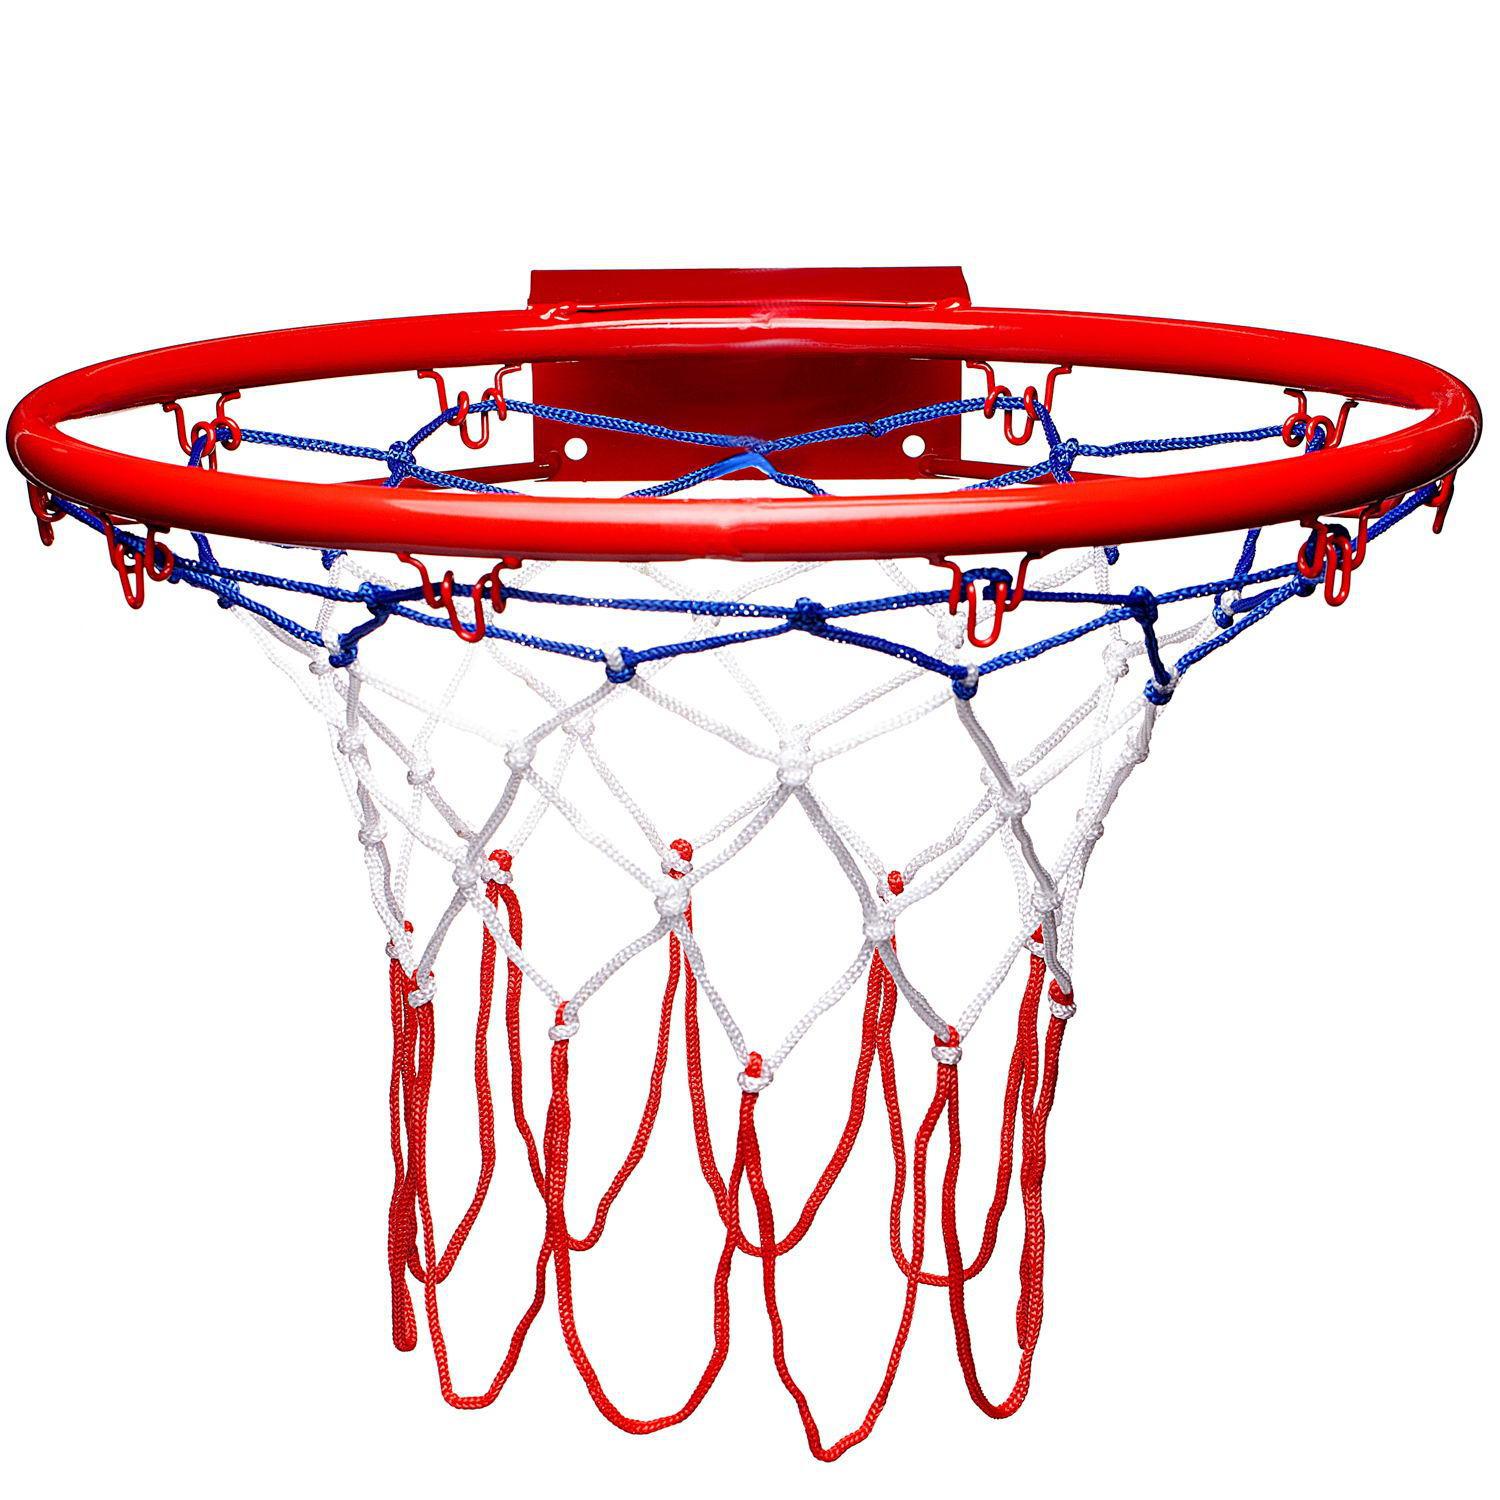 Баскетбольная корзина ABtoys c сеткой и креплениями, диаметр корзины 42 см баскетбольная корзина abtoys c сеткой и креплениями диаметр корзины 42 см